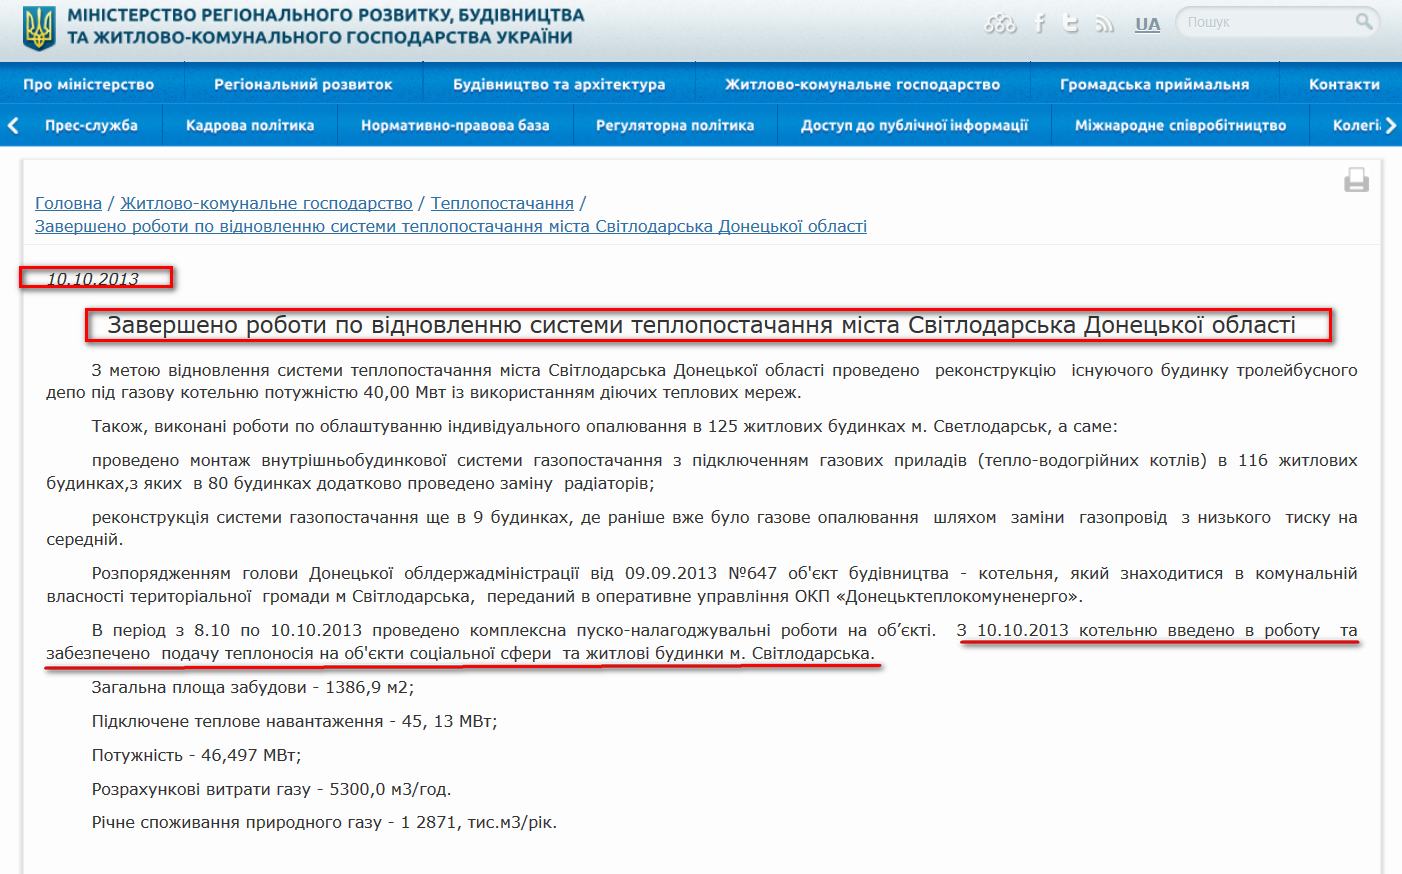 http://minregion.gov.ua/zhkh/teplopostachannya/zaversheno-roboti-po-vidnovlennyu-sistemi-teplopostachannya-mista-svitlodarska-doneckoyi-oblasti/